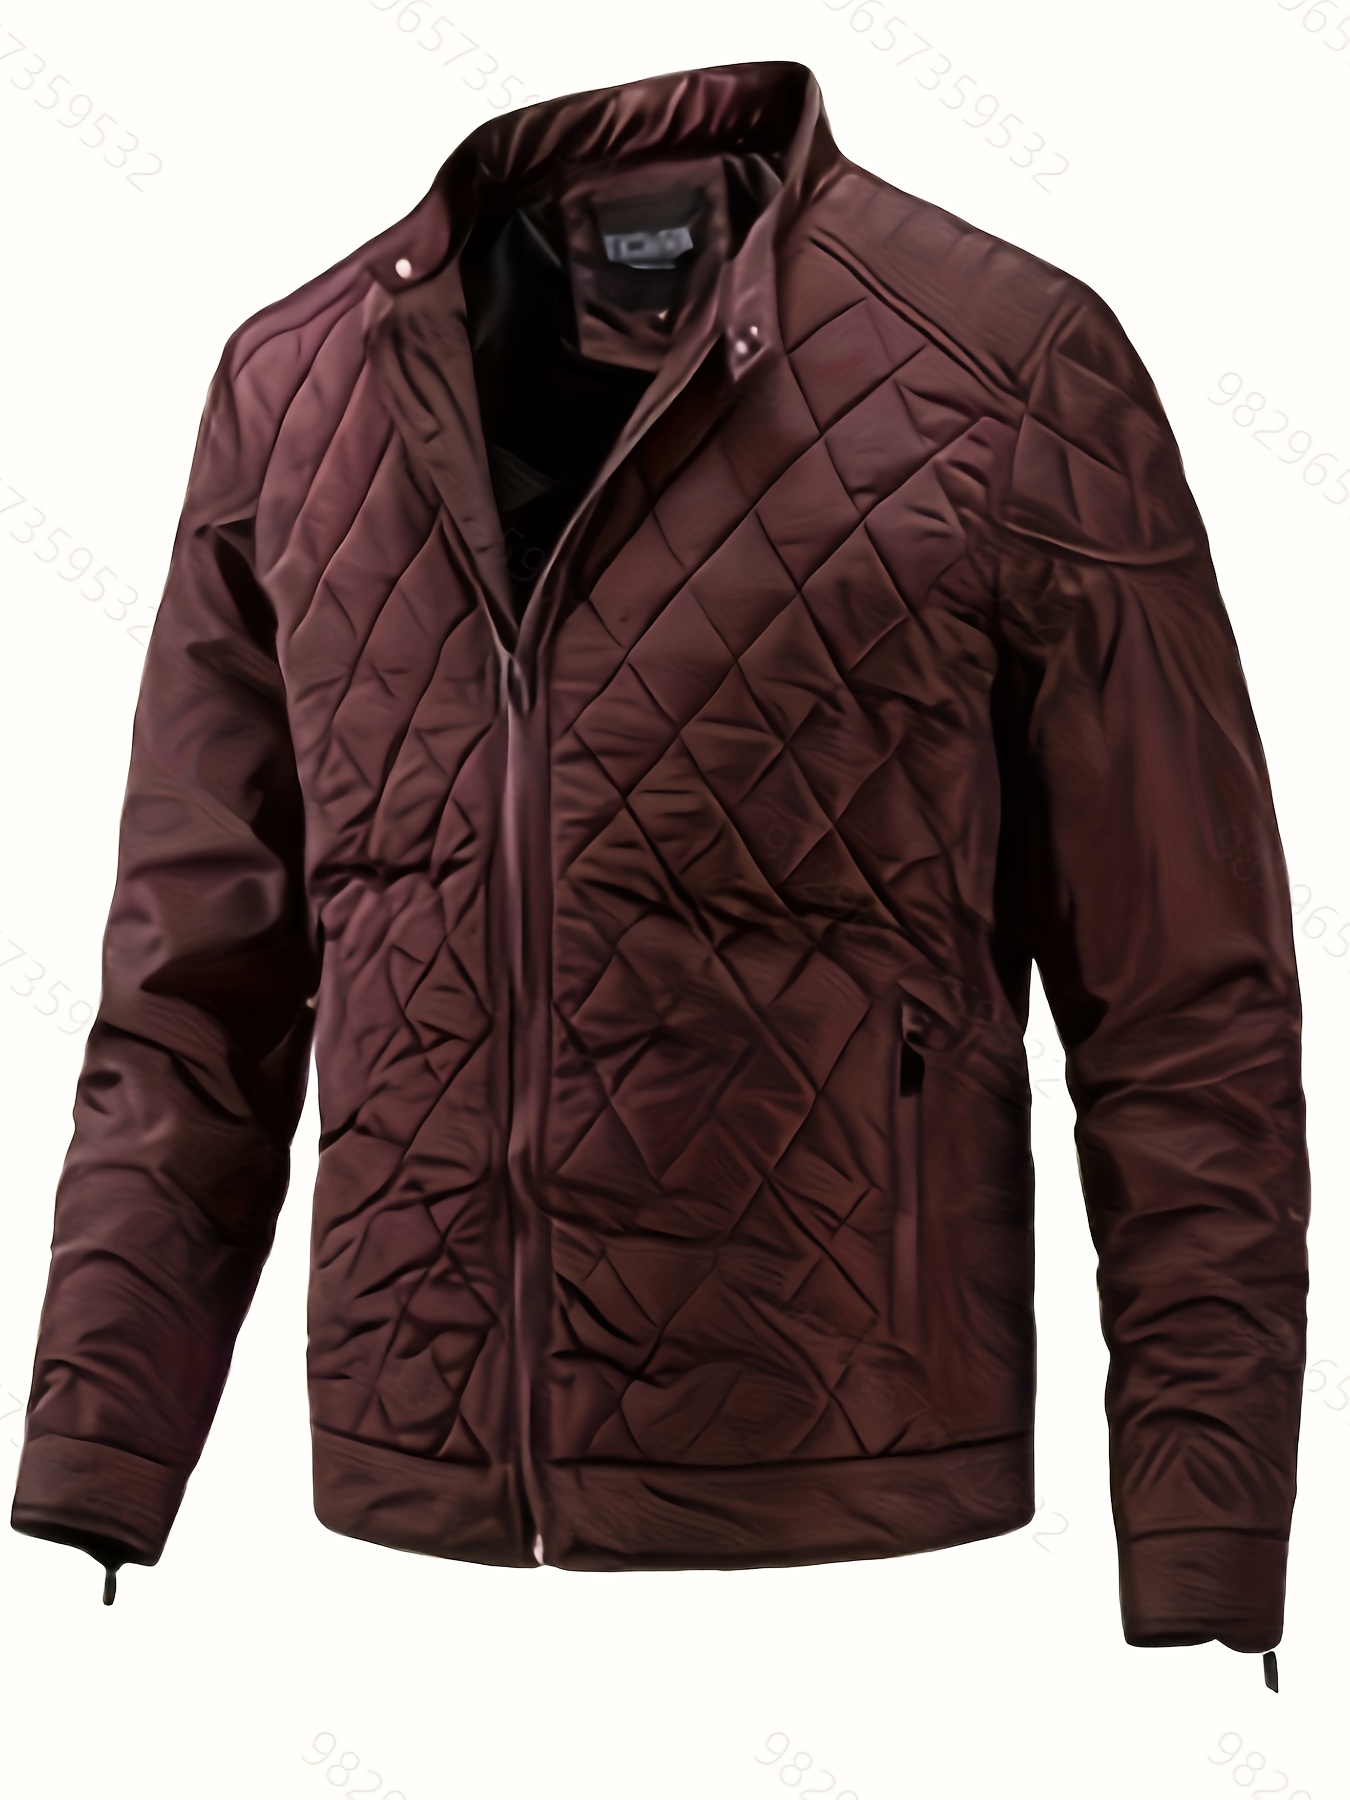 70s windbreaker jacket size - Gem